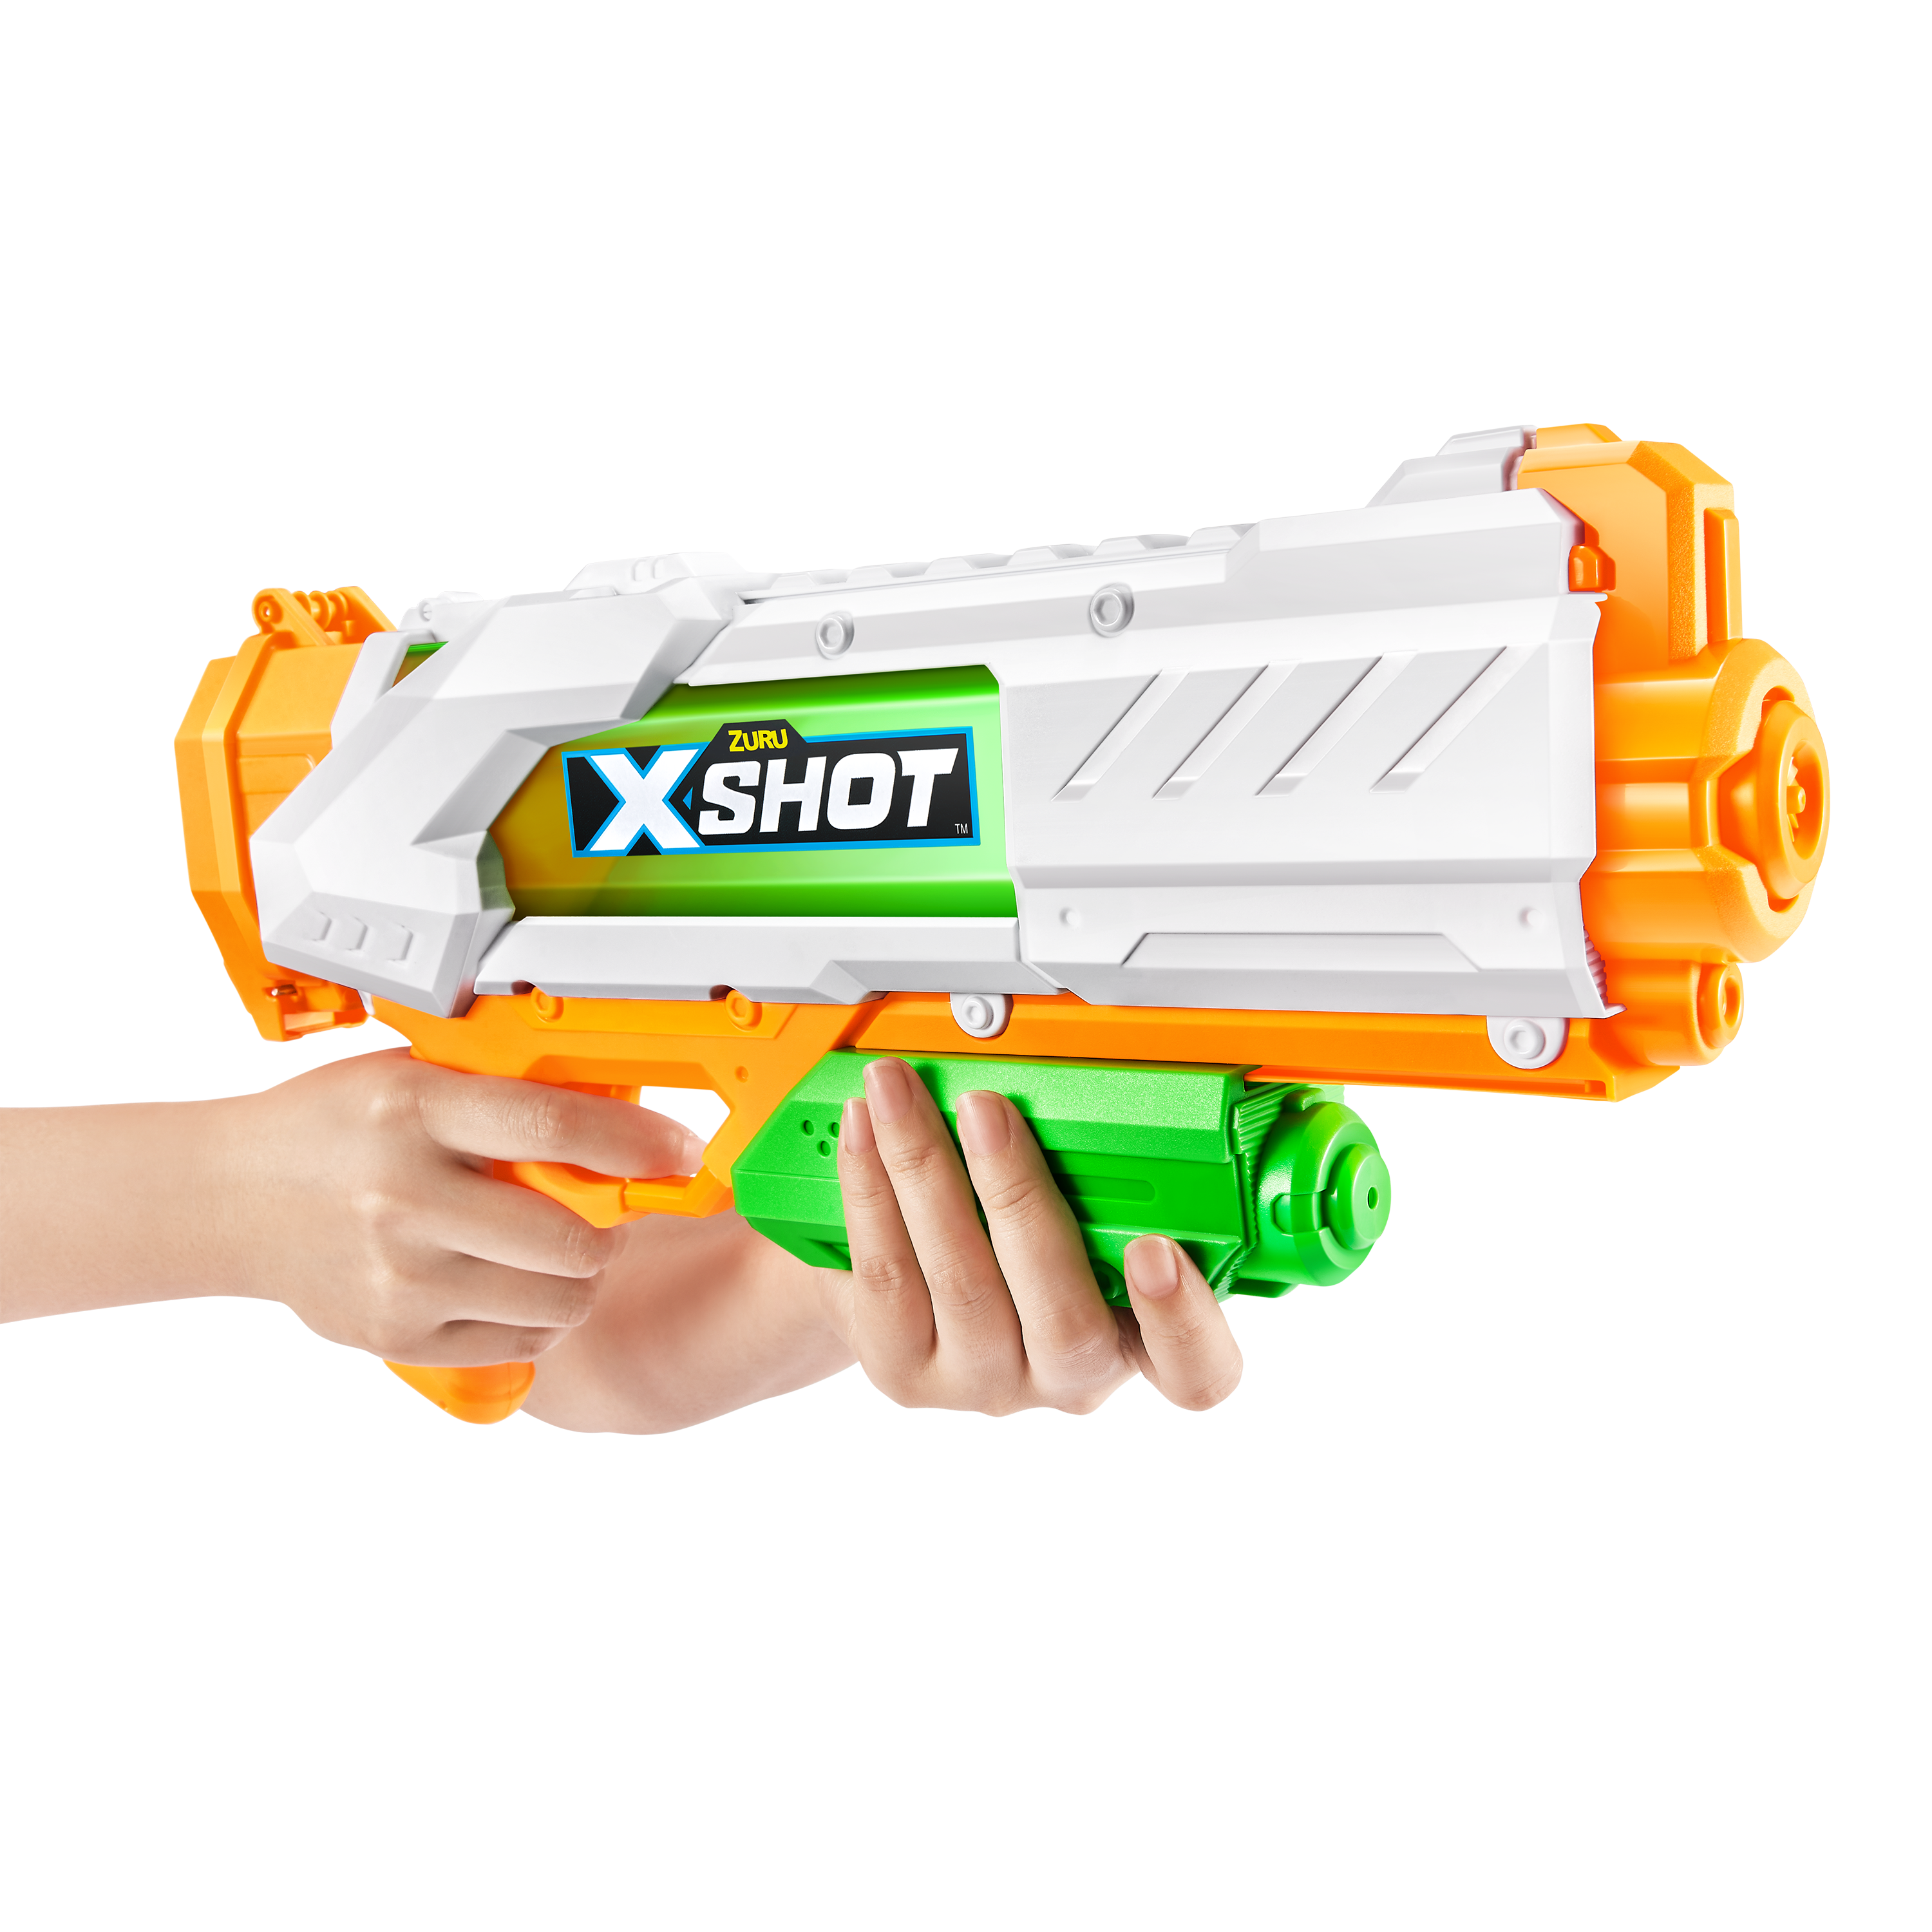 X-shot fast fill - X-SHOT